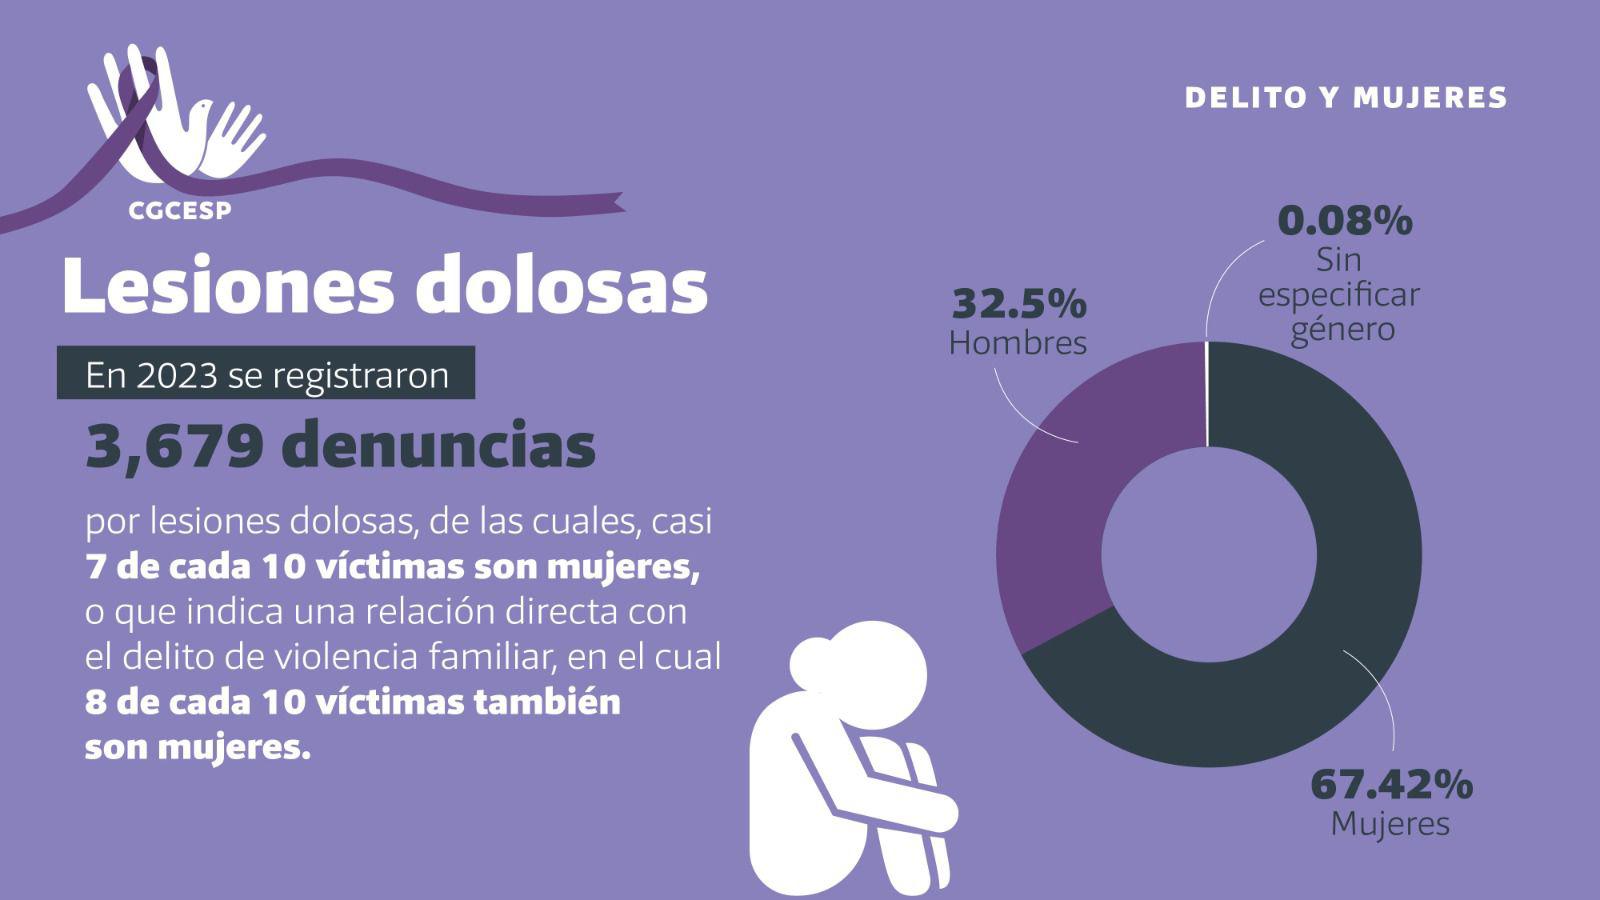 $!Violencia familiar, feminicidio, violación y lesiones, los delitos que más afectan a las mujeres en Sinaloa